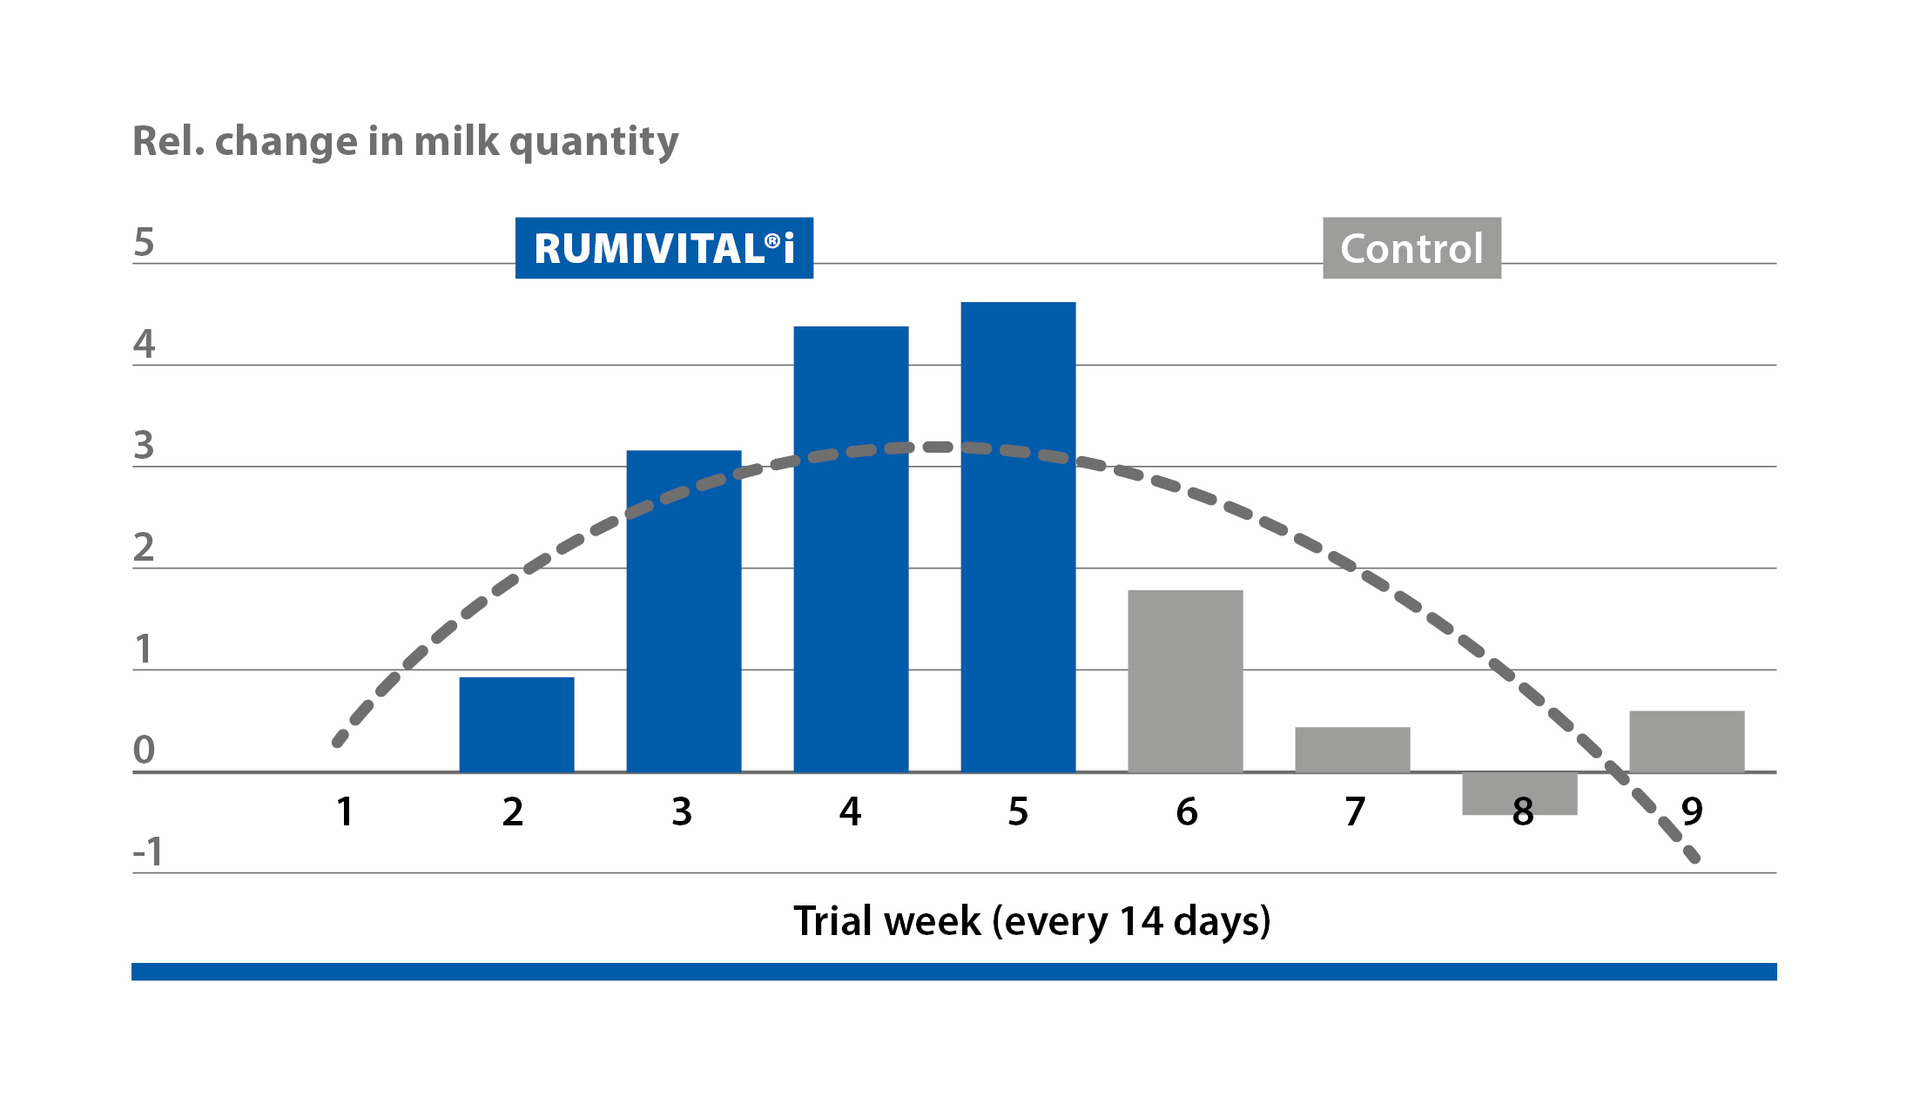 Rumivital®i increases milk yield